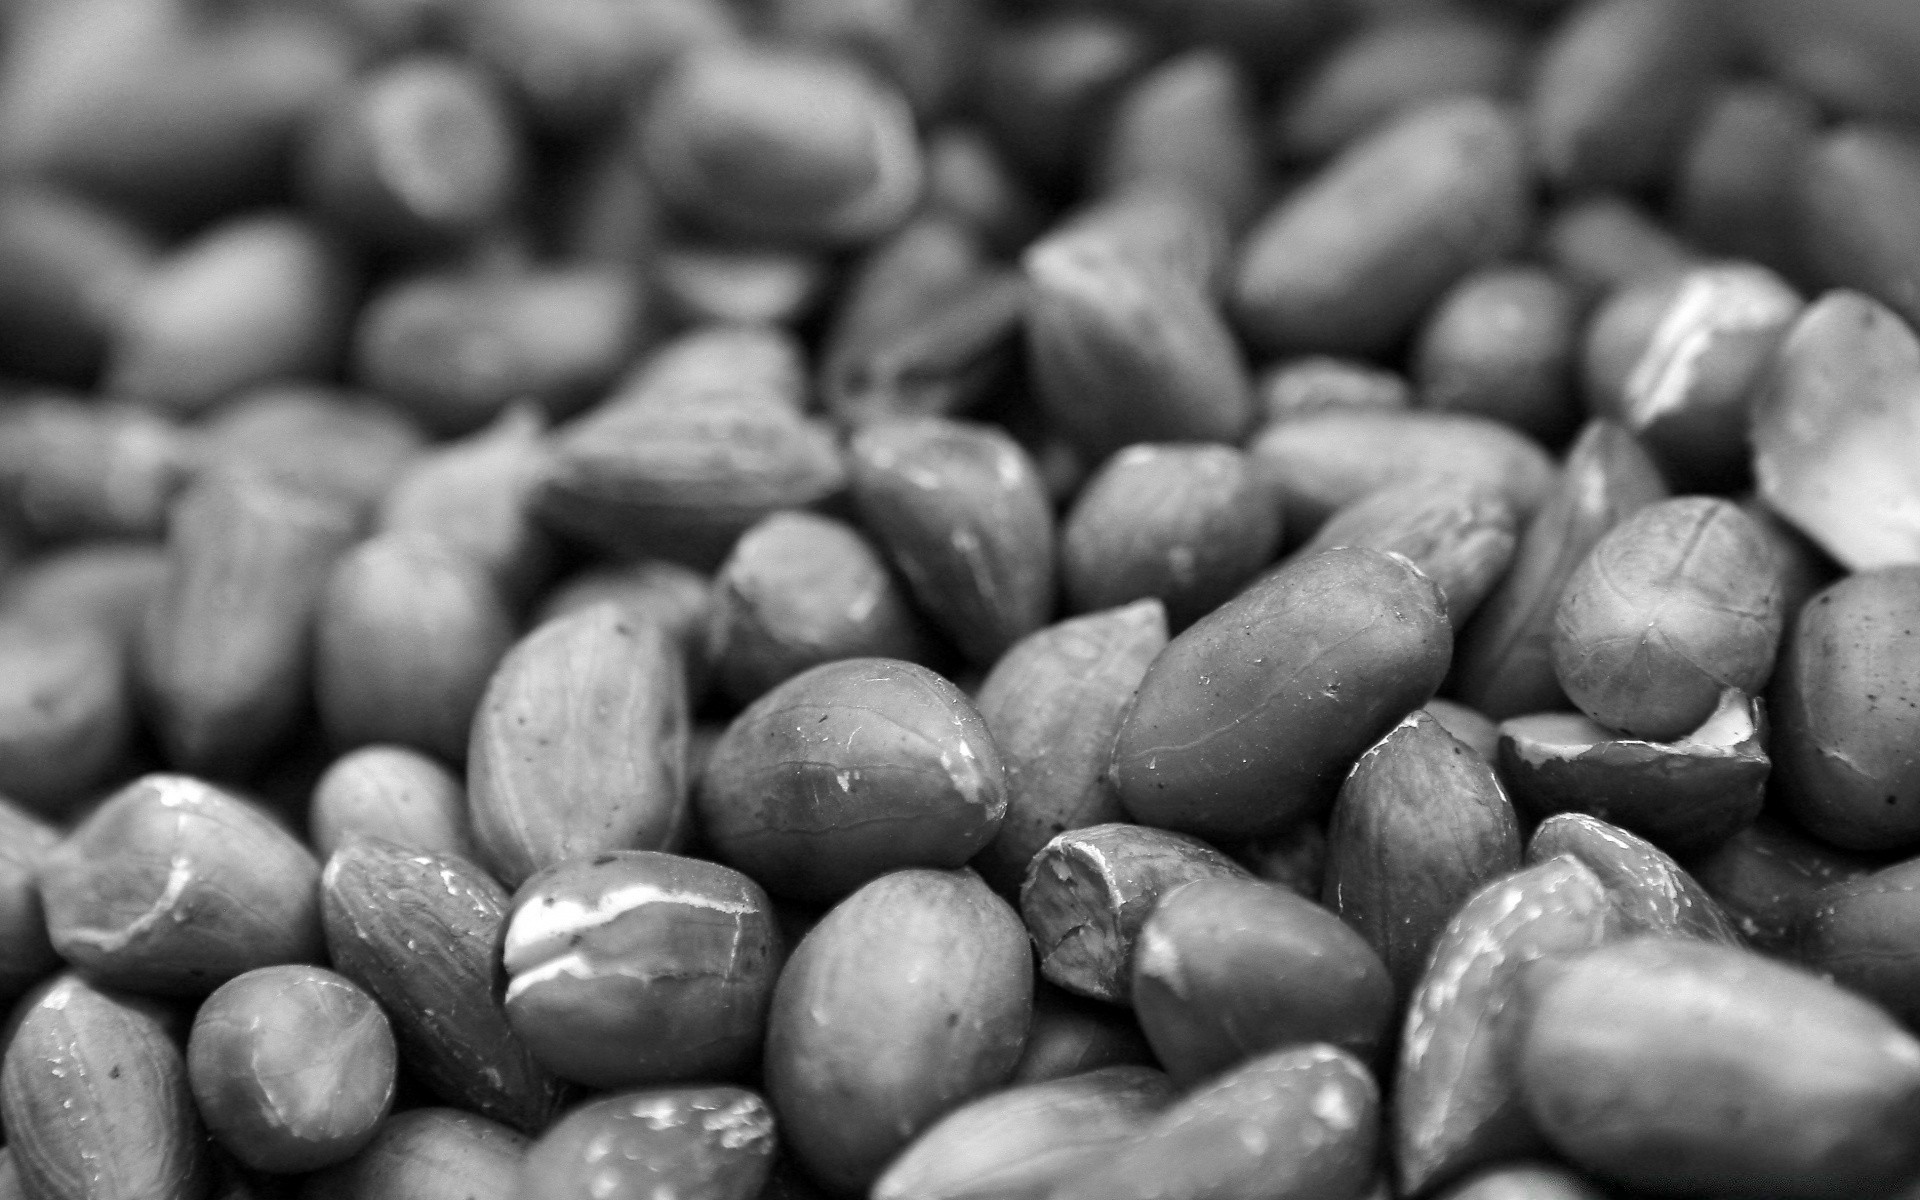 черно-белое еда фасоли крупным планом рабочего стола текстура партия здоровья питание семян овощ шпунт сухой рядом здоровый многие бобовых сельское хозяйство природа